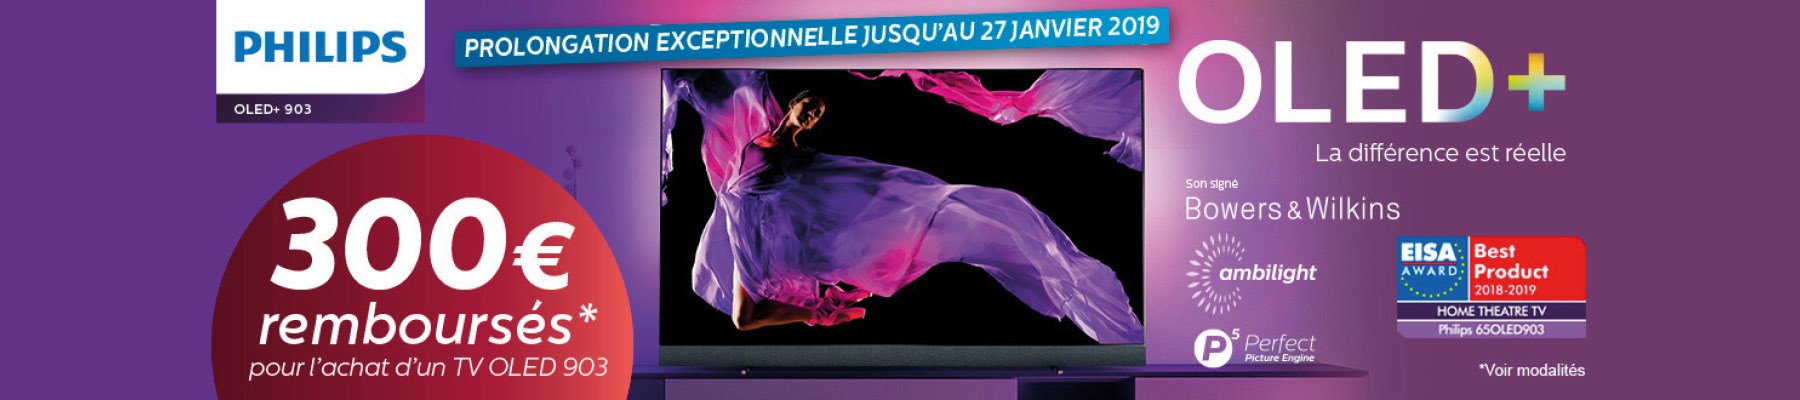 Philips TV OLED jusqu'à 300€ remboursés